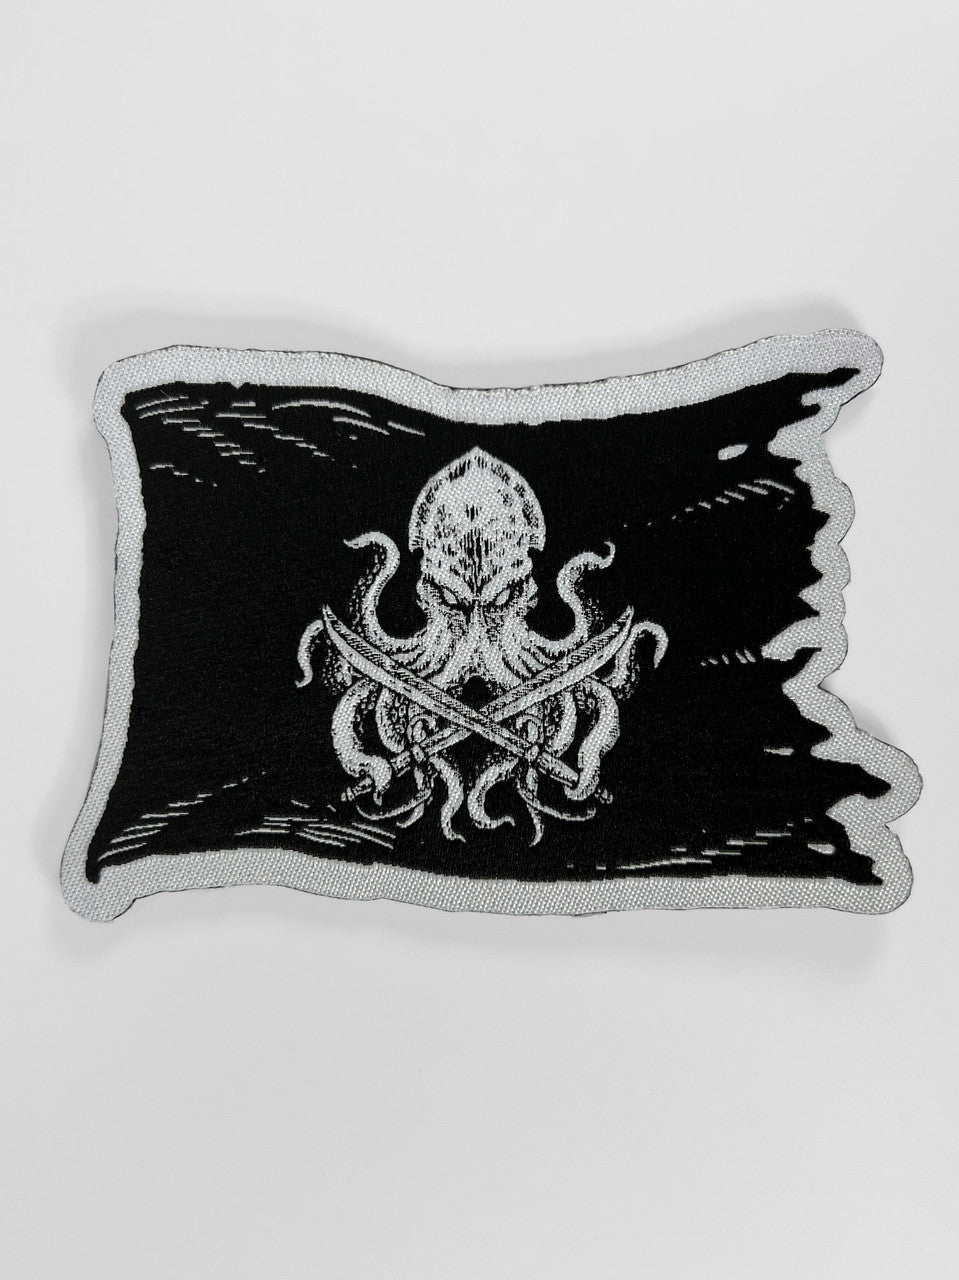 Kraken Flag Fabric Patch w/Velcro Backing – Kraken Dice